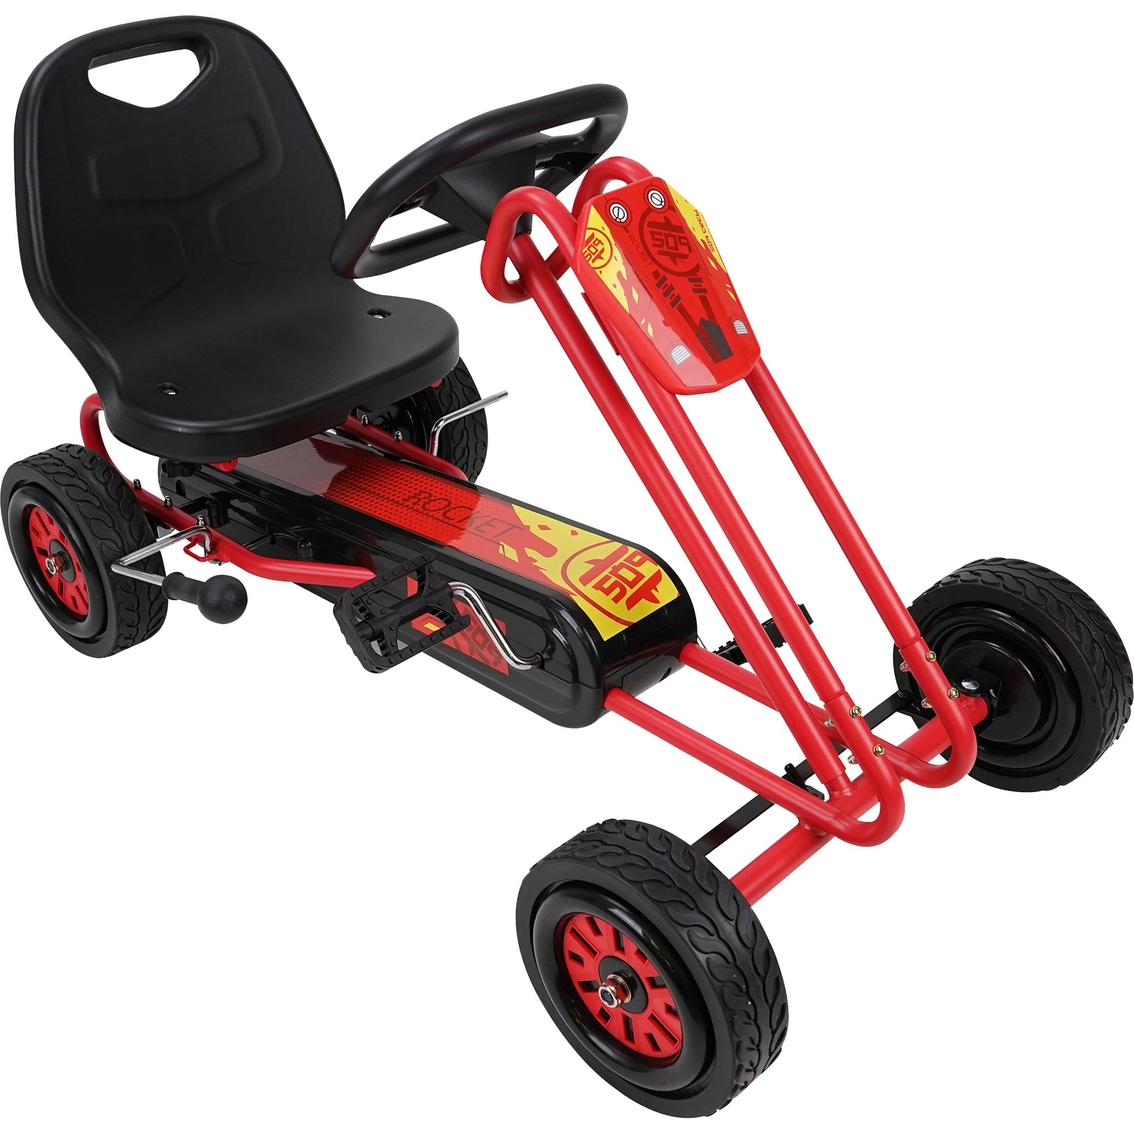 Rocket Red Pedal Go Kart for Kids - Image 3 of 5